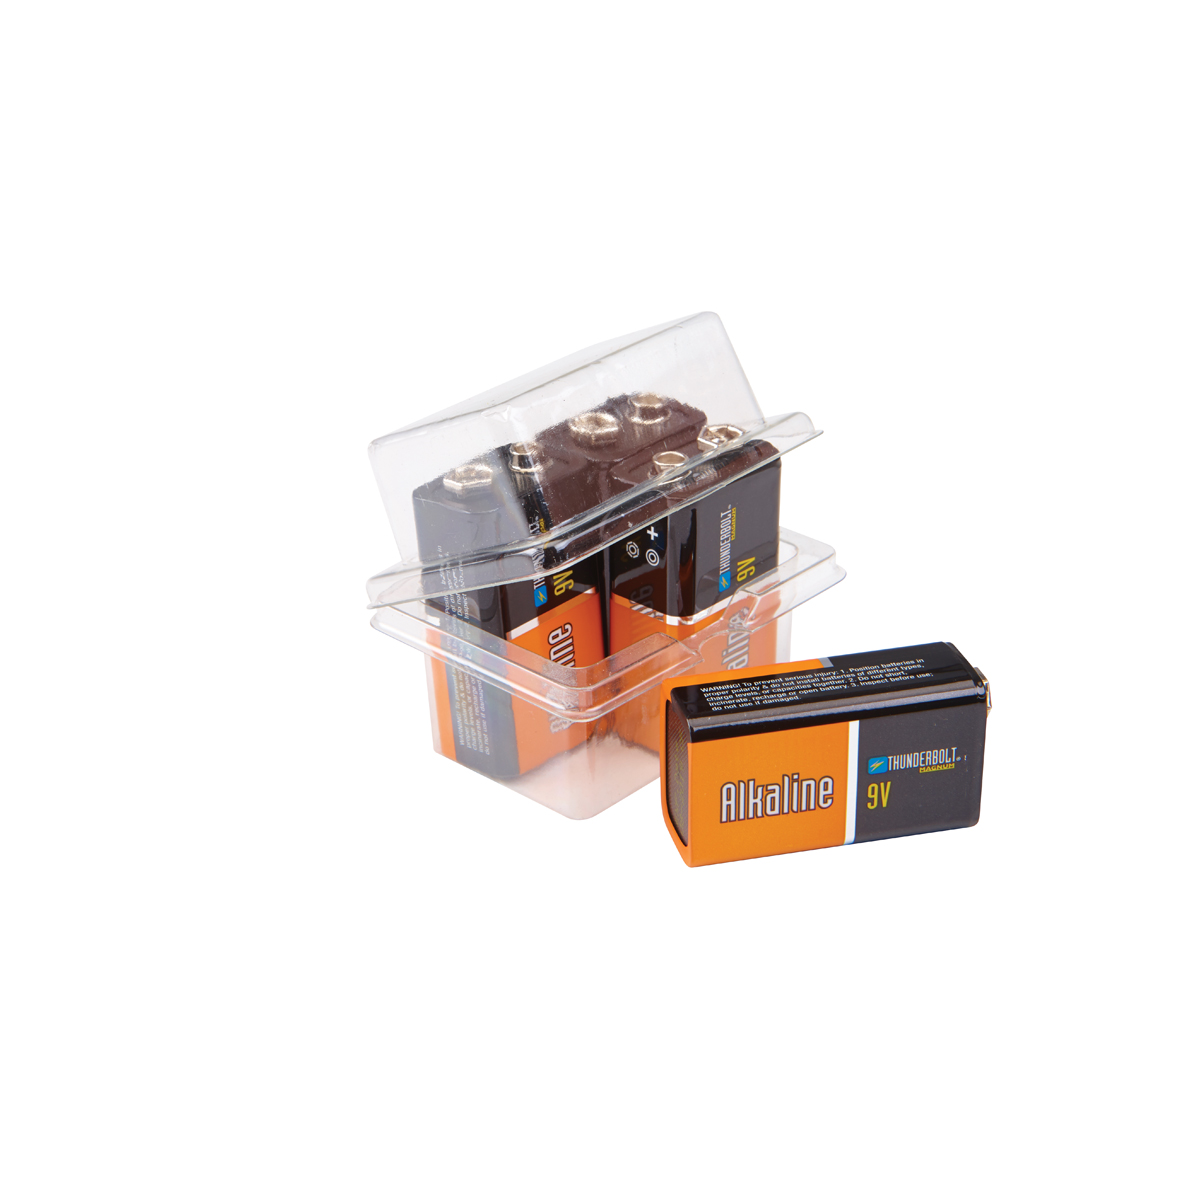 THUNDERBOLT 9V Alkaline Batteries - 4 Pk. – Item 92408